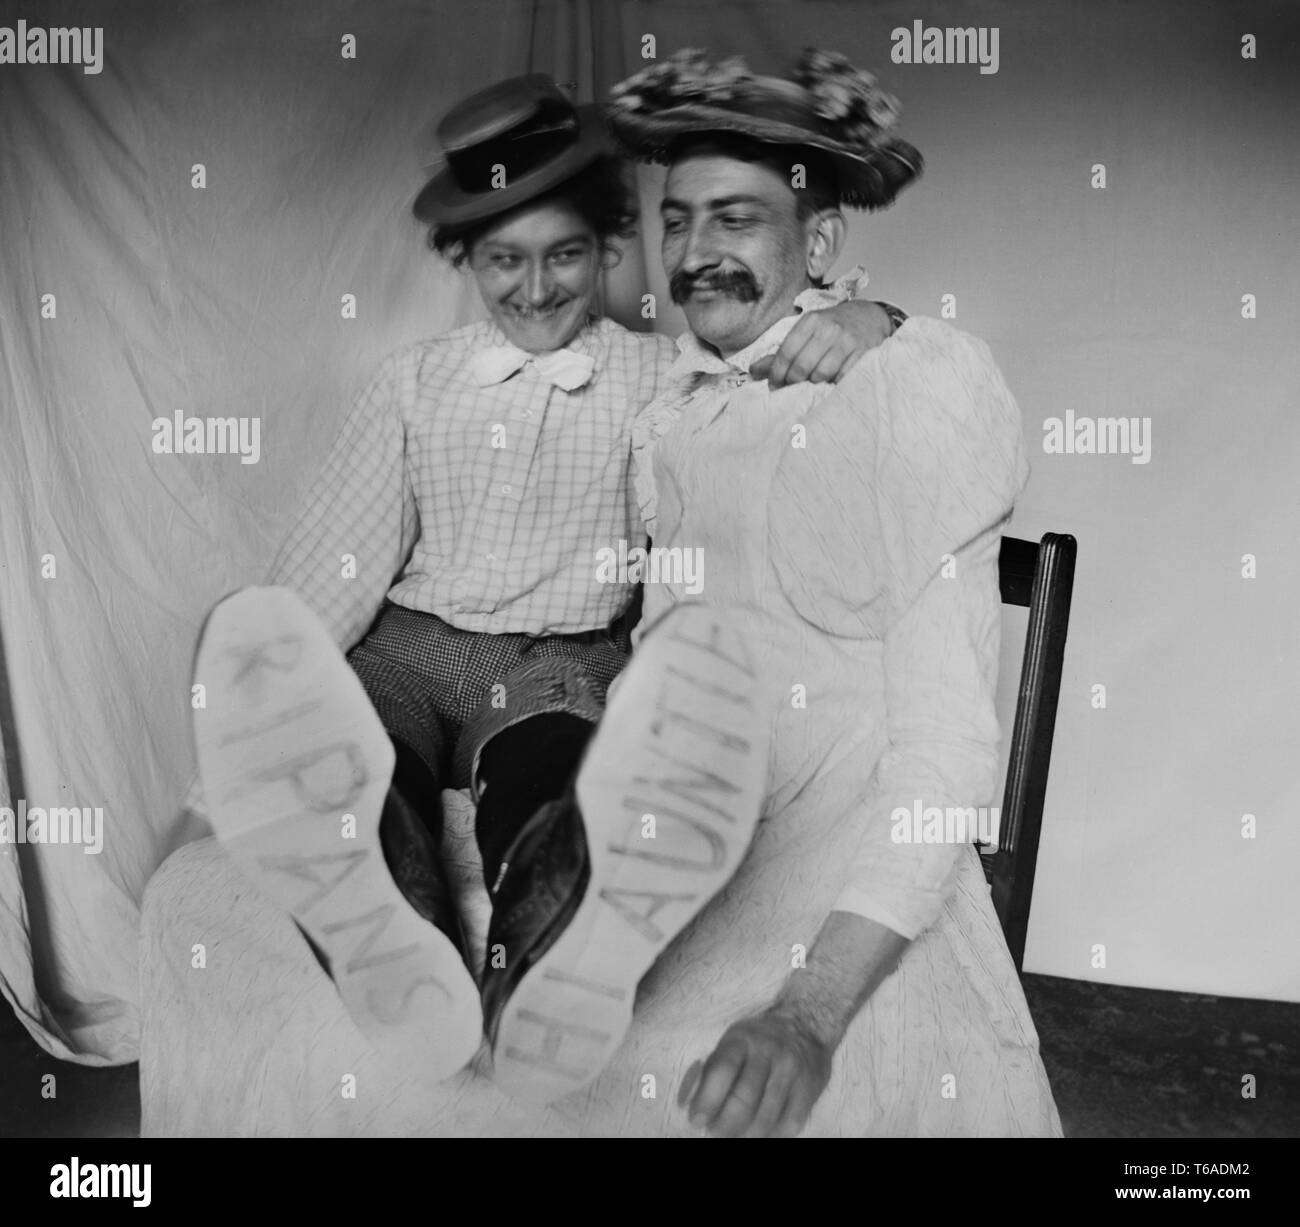 Un homme dans une robe et une femme en pantalon s'amusent ensemble, ca. 1910. Banque D'Images